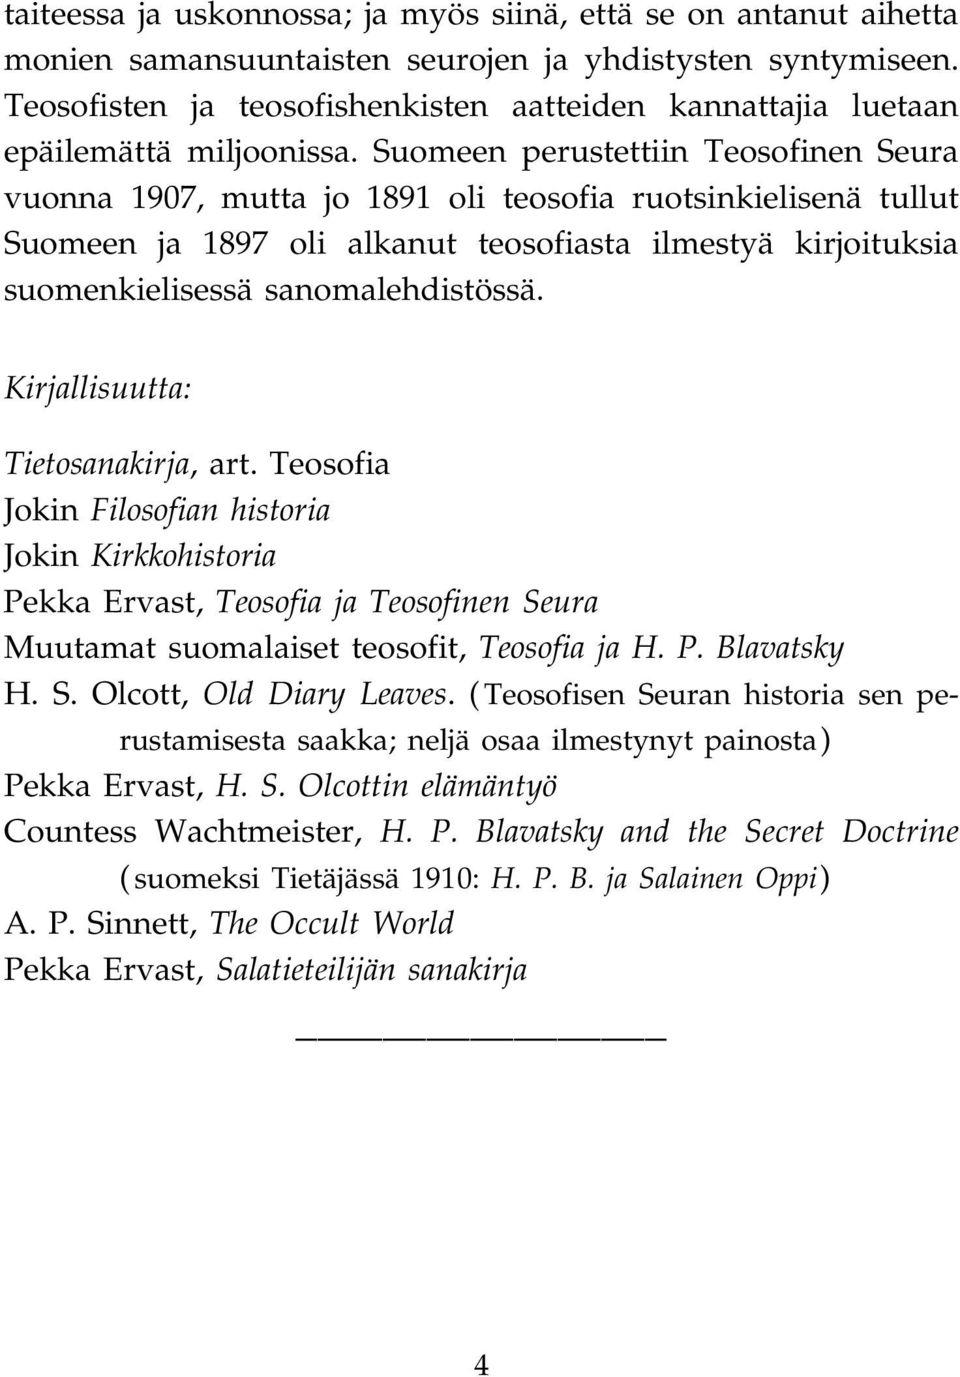 Suomeen perustettiin Teosofinen Seura vuonna 1907, mutta jo 1891 oli teosofia ruotsinkielisenä tullut Suomeen ja 1897 oli alkanut teosofiasta ilmestyä kirjoituksia suomenkielisessä sanomalehdistössä.